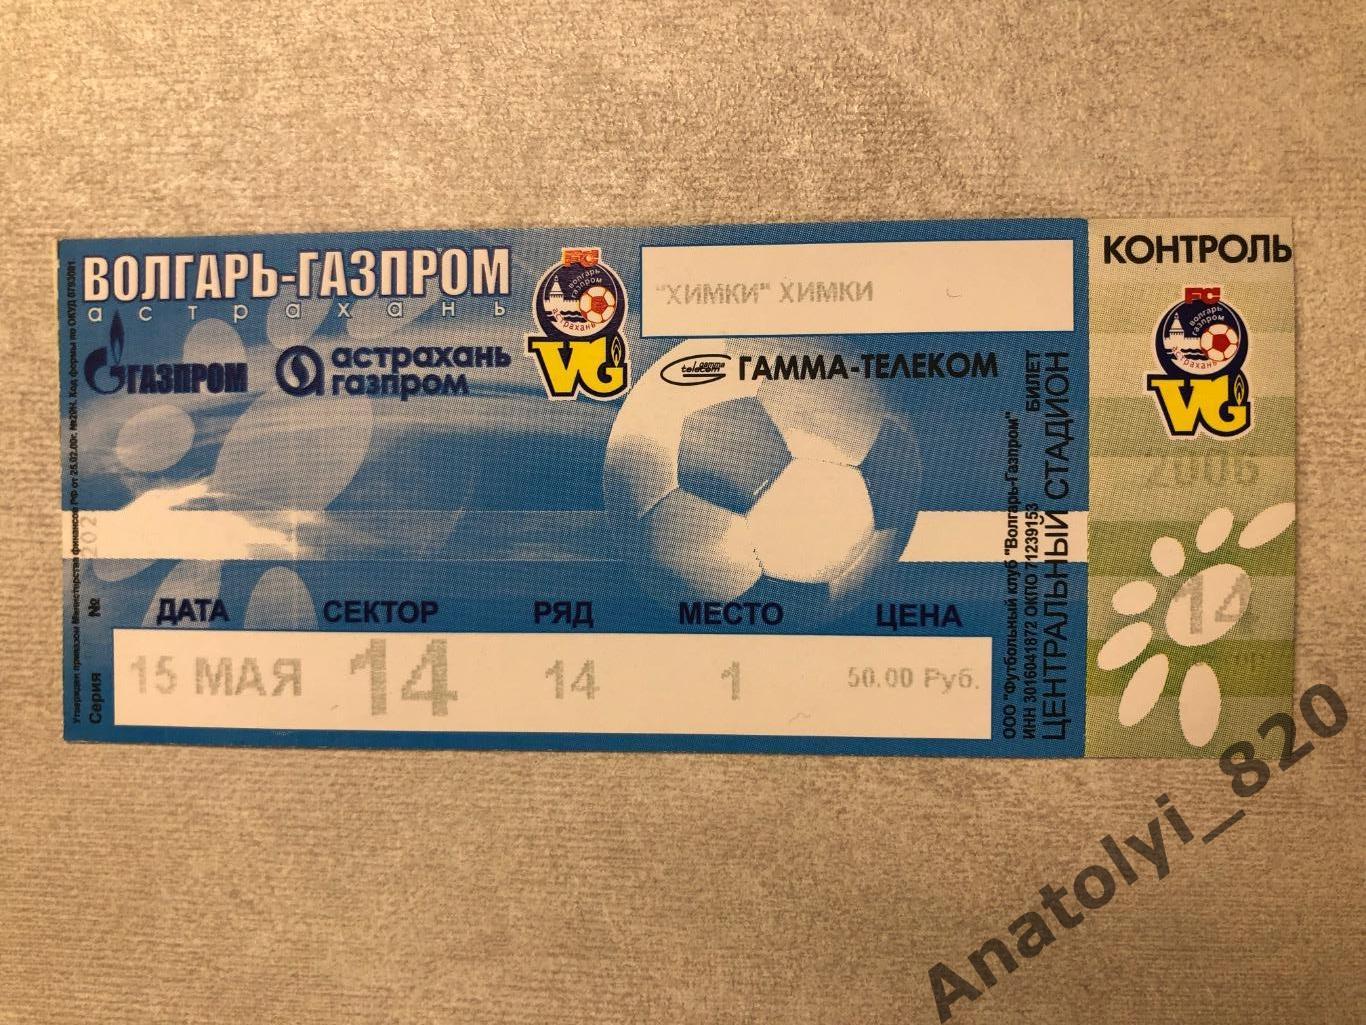 Волгарь-Газпром Астрахань - ФК Химки, 15.05.2003, билет